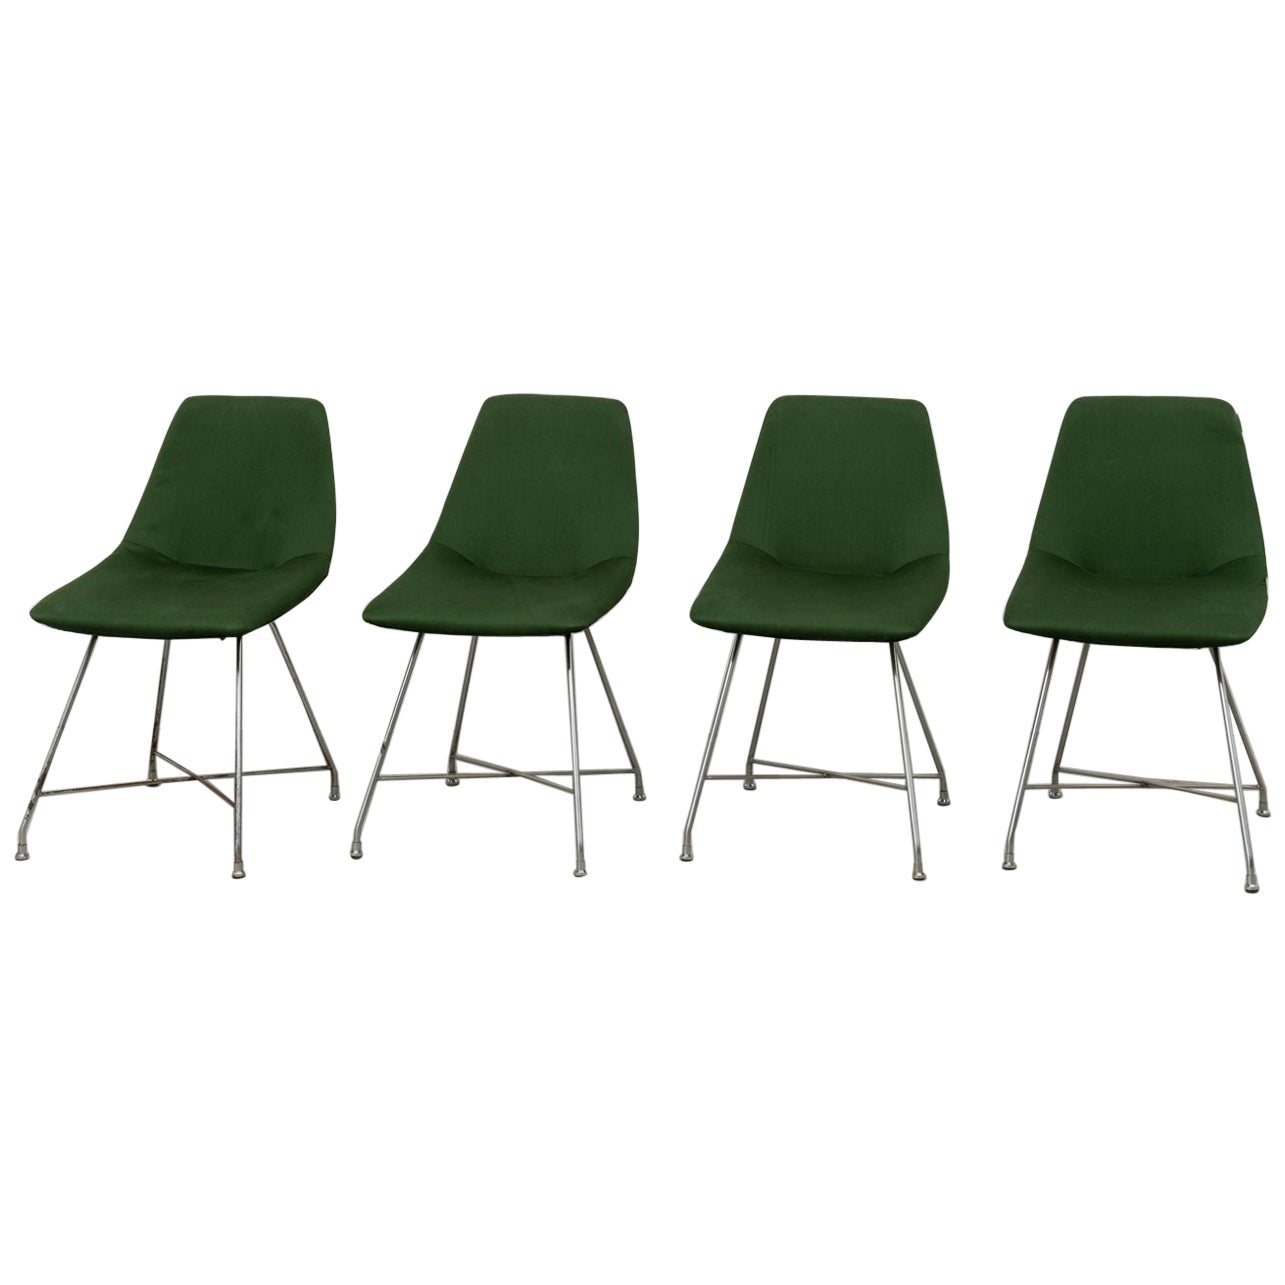 Augusto Bozzi Ensemble de 4 chaises "Aster" vertes et chromées pour Saporiti, années 1950